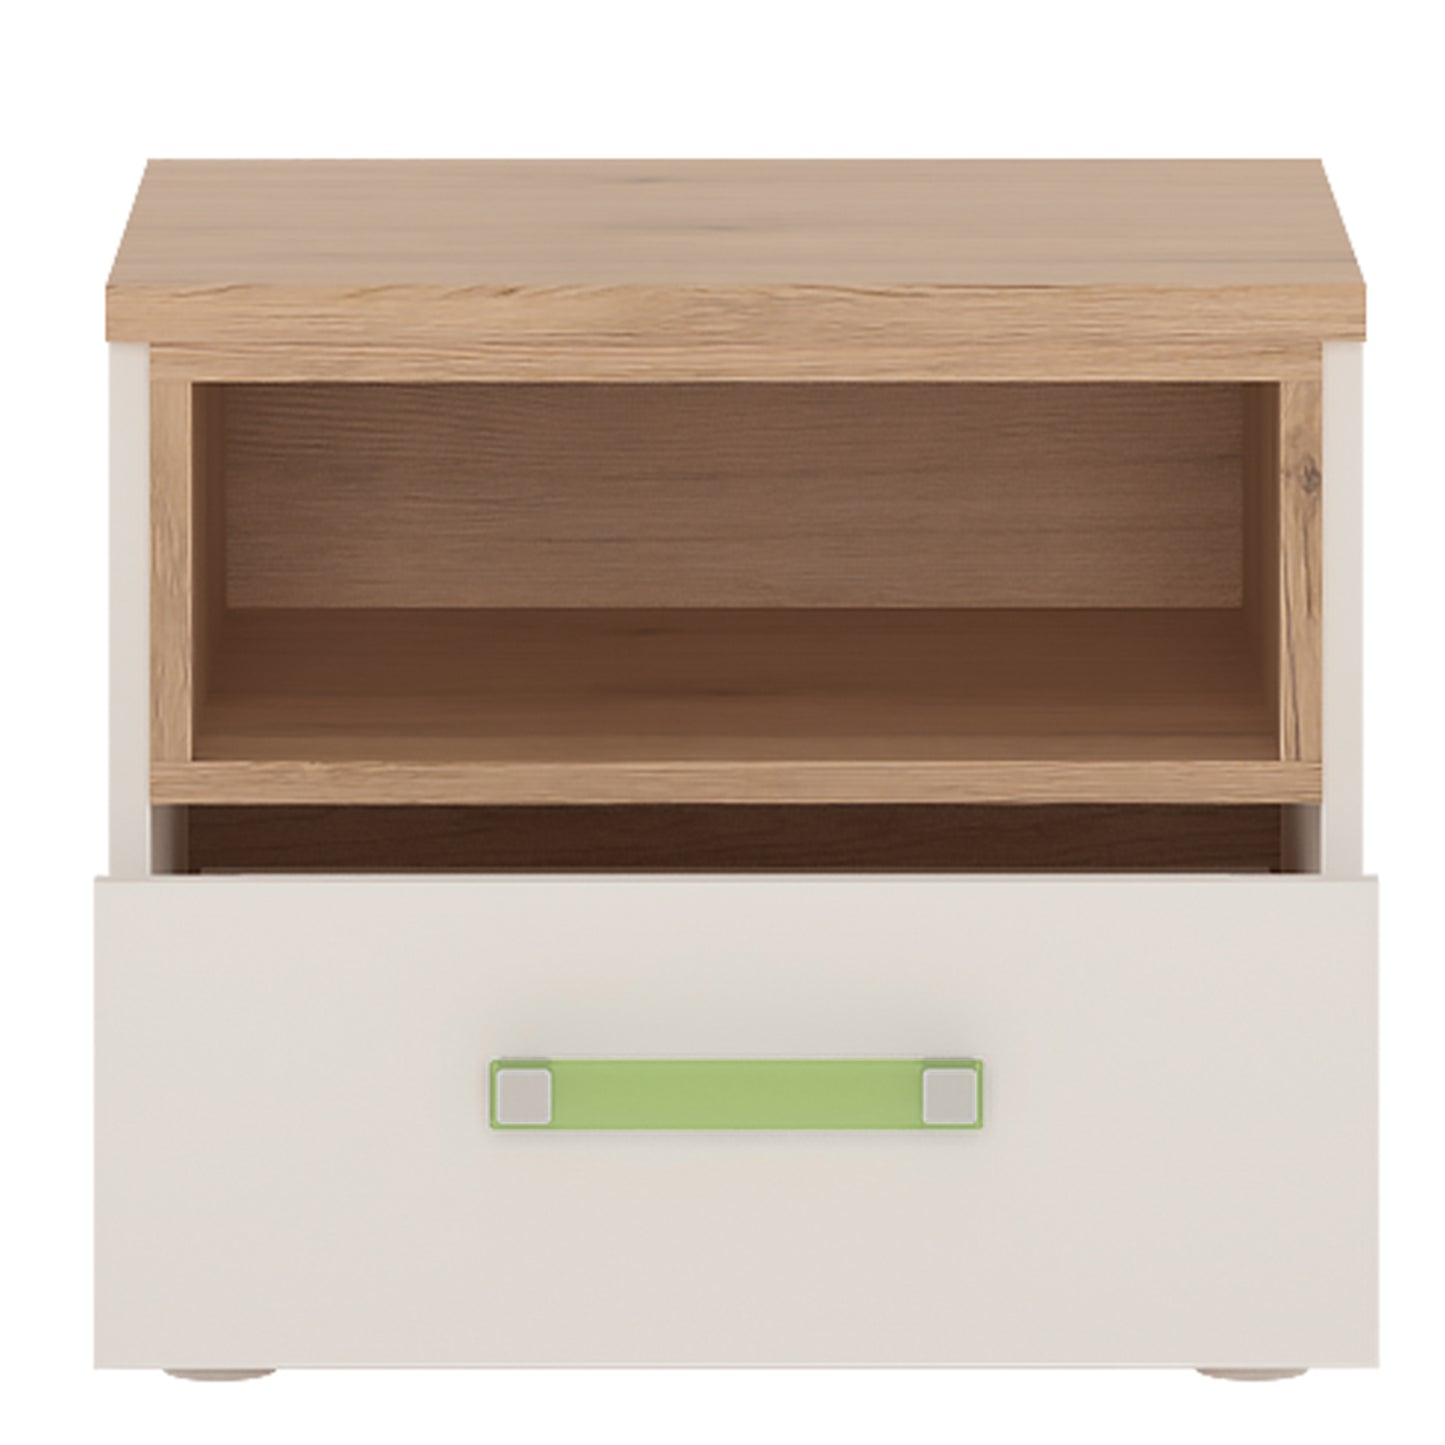 4Kids  1 Drawer bedside Cabinet in Light Oak and white High Gloss (lemon handles)